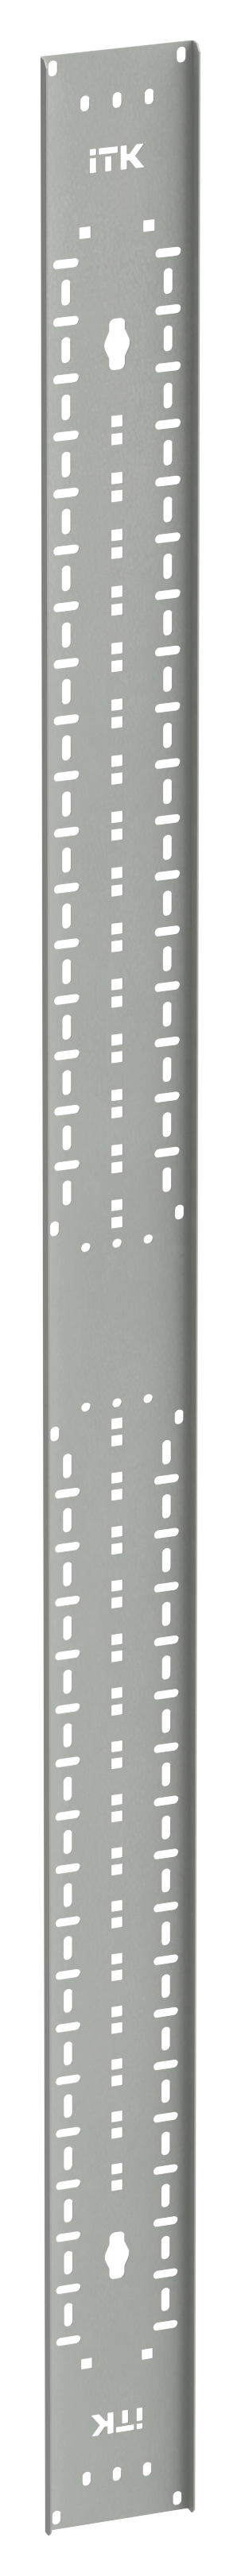 ITK LINEA S Органайзер кабельный вертикальный 45U серый